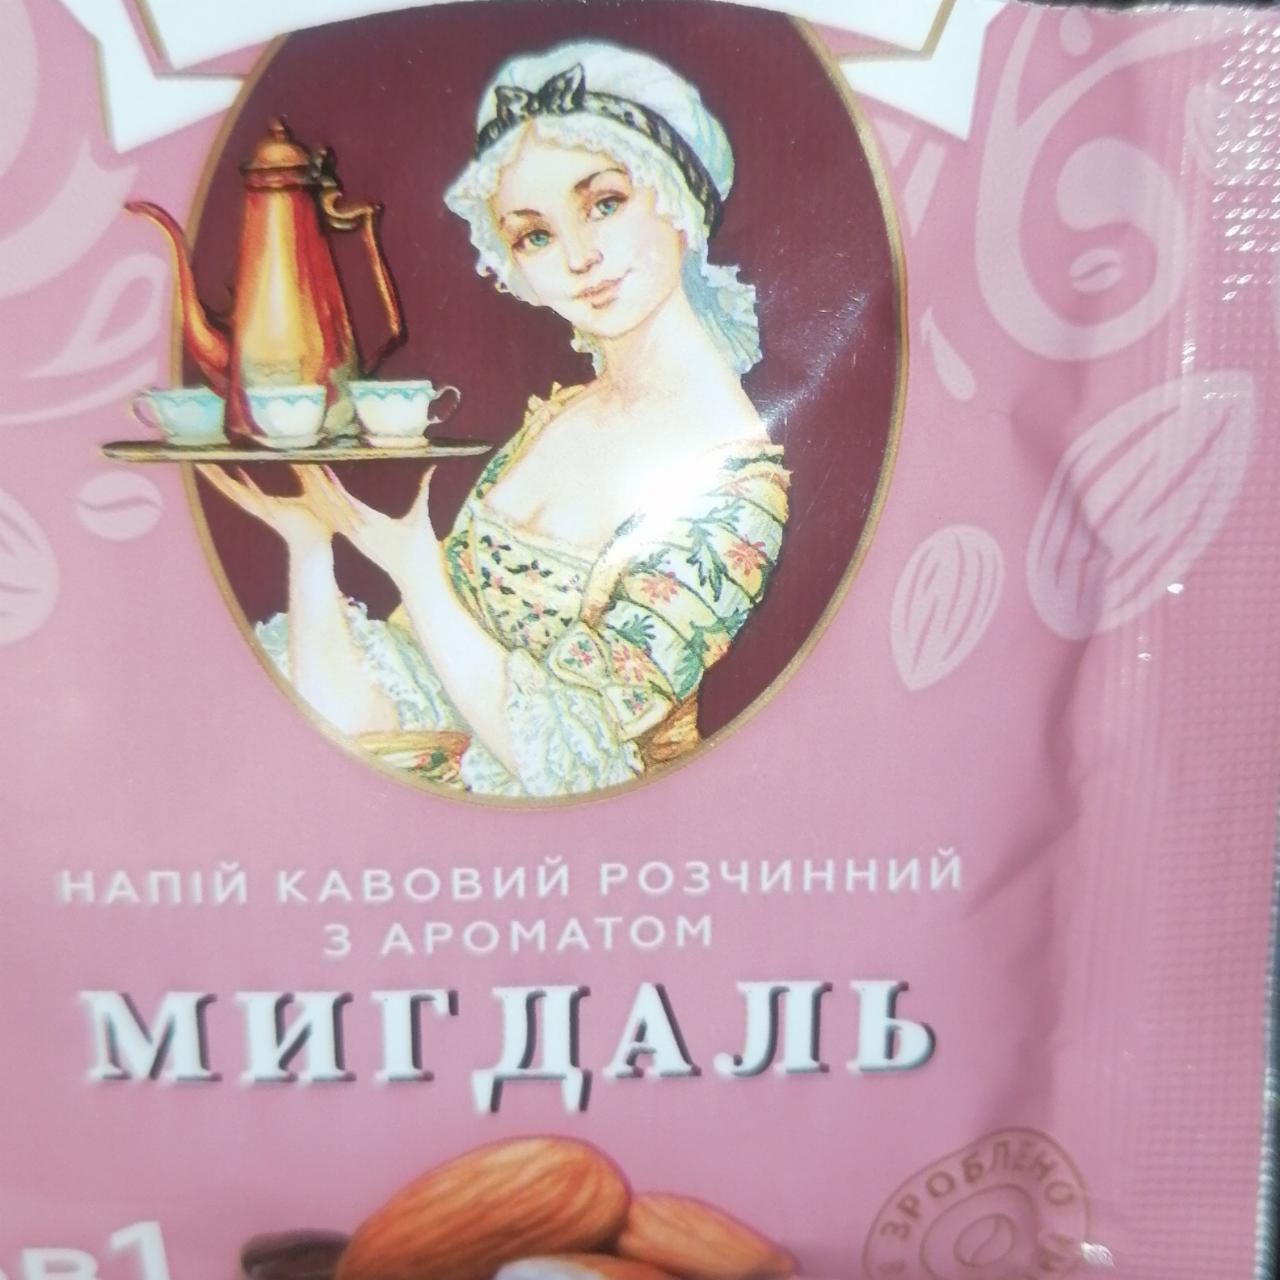 Фото - кофейный напиток растворимый с ароматом миндаля Петрівська слобода